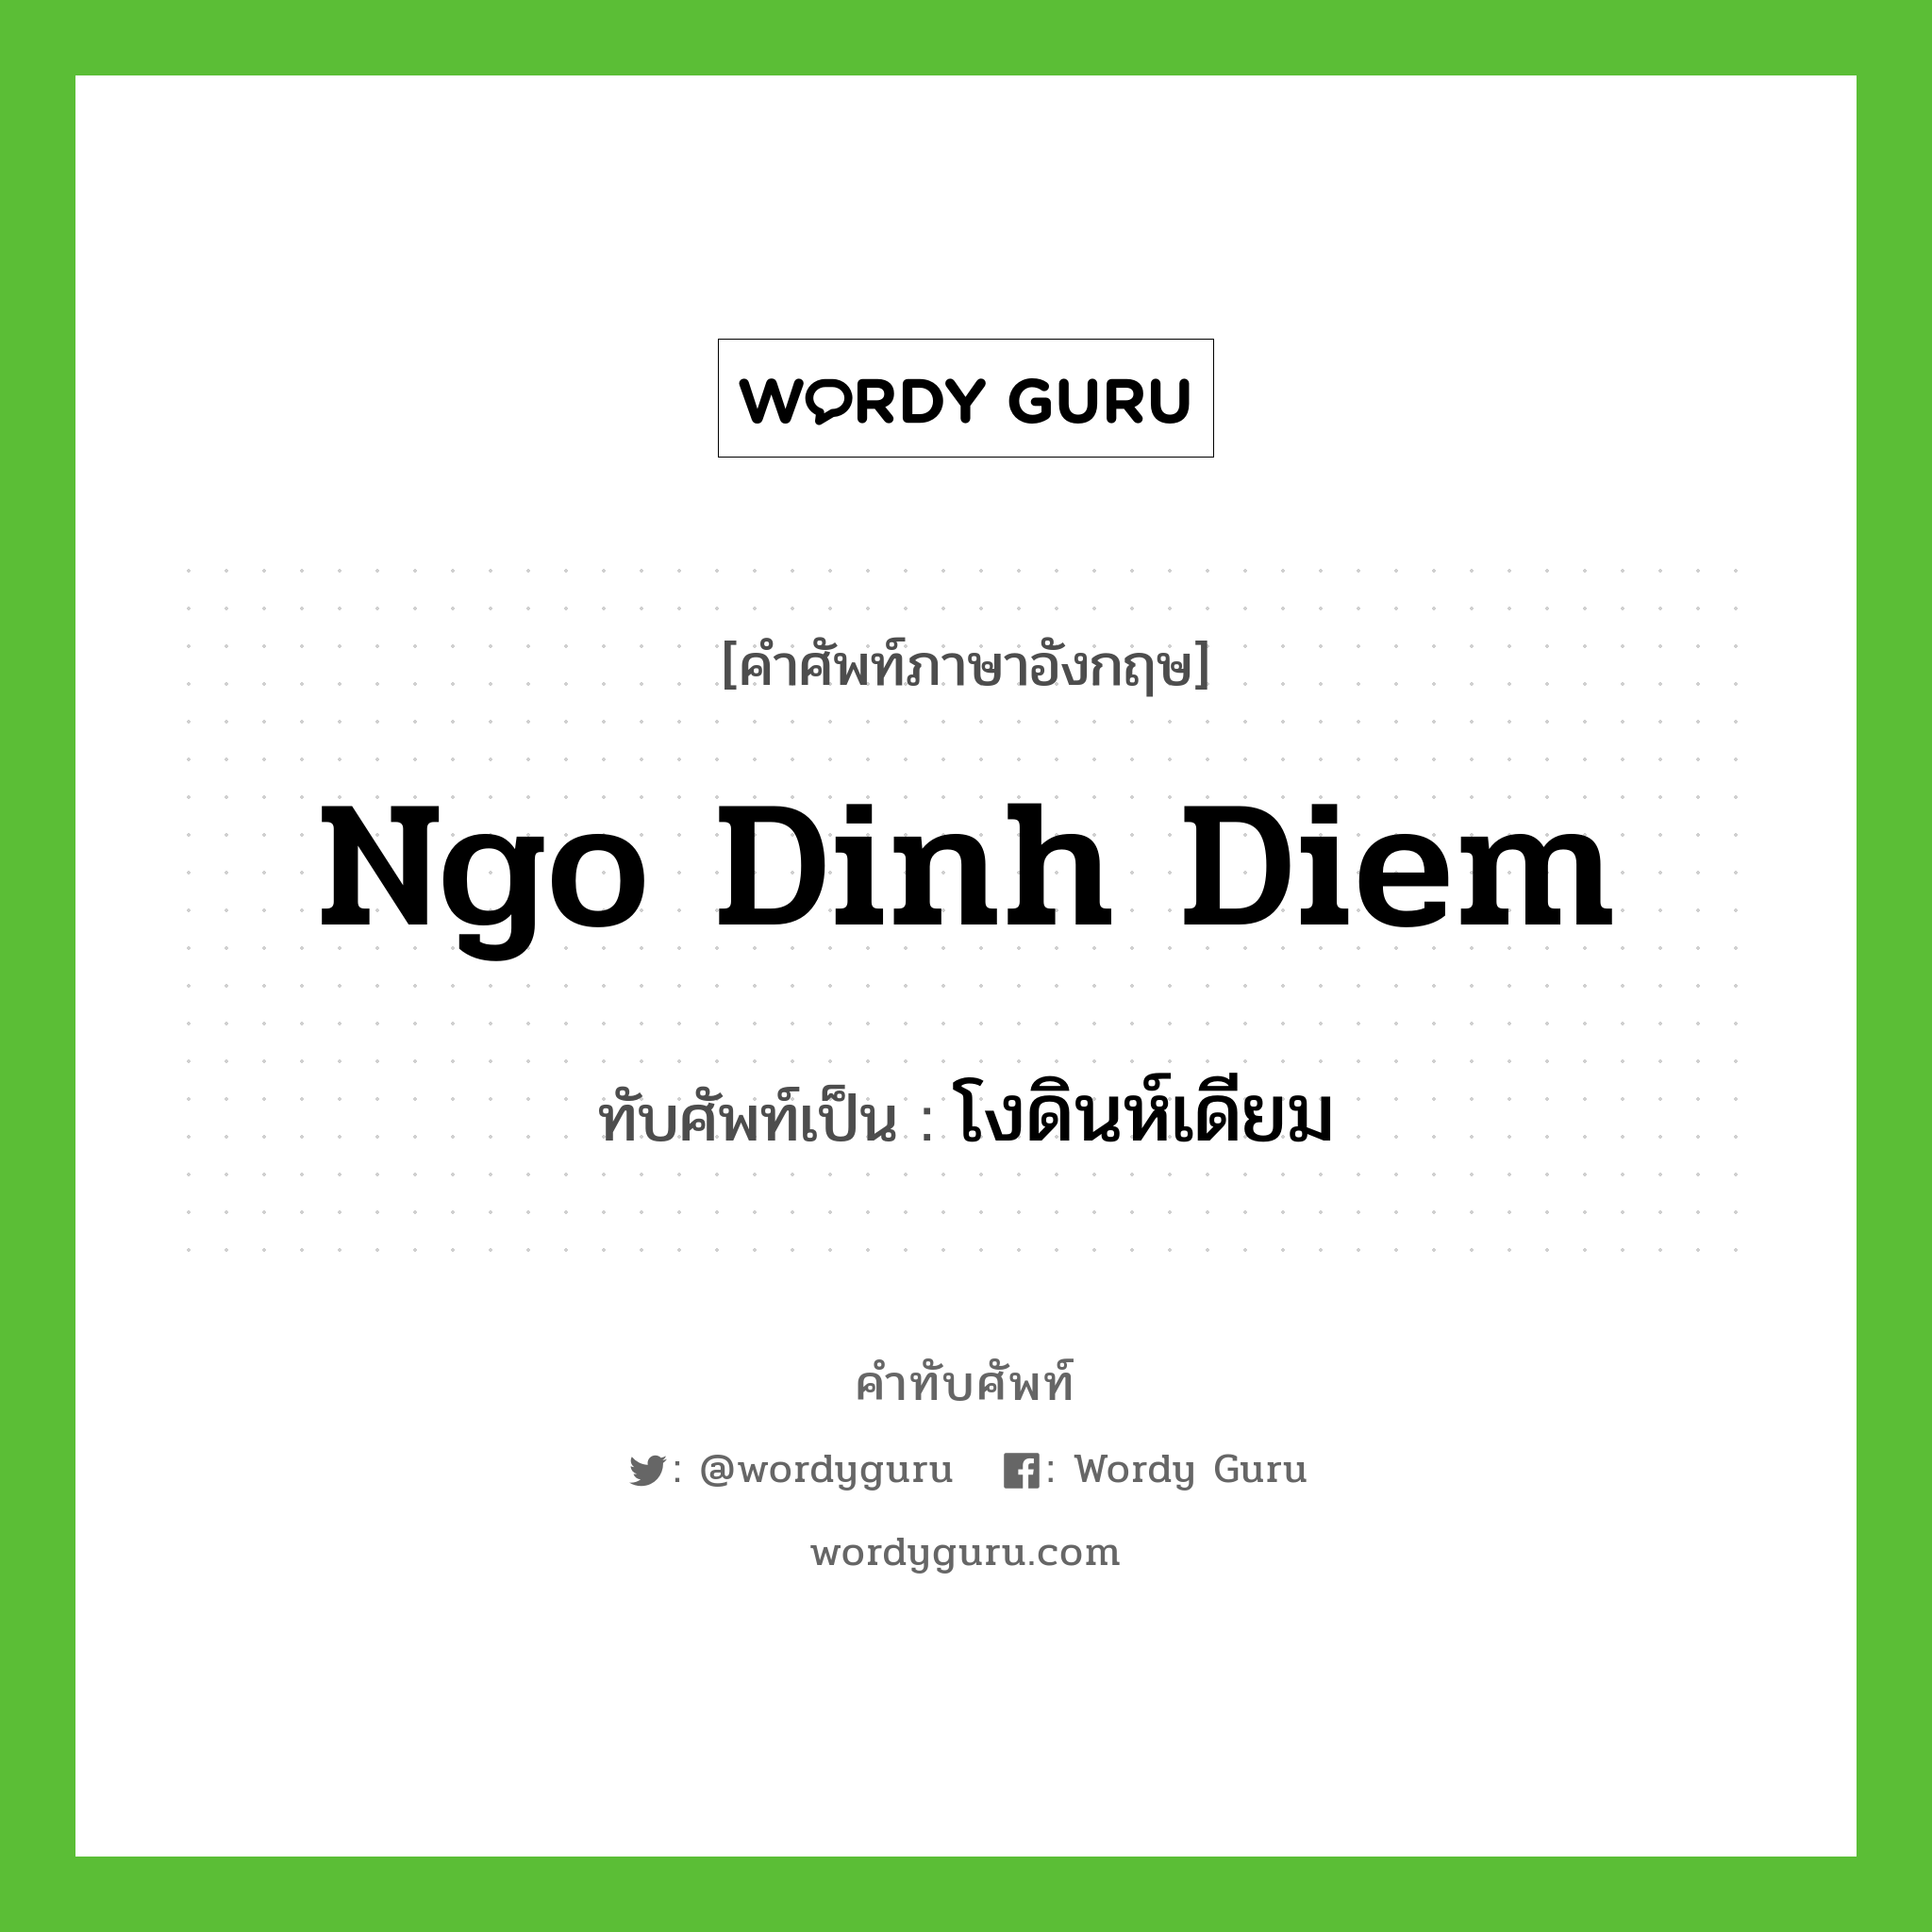 Ngo Dinh Diem เขียนเป็นคำไทยว่าอะไร?, คำศัพท์ภาษาอังกฤษ Ngo Dinh Diem ทับศัพท์เป็น โงดินห์เดียม